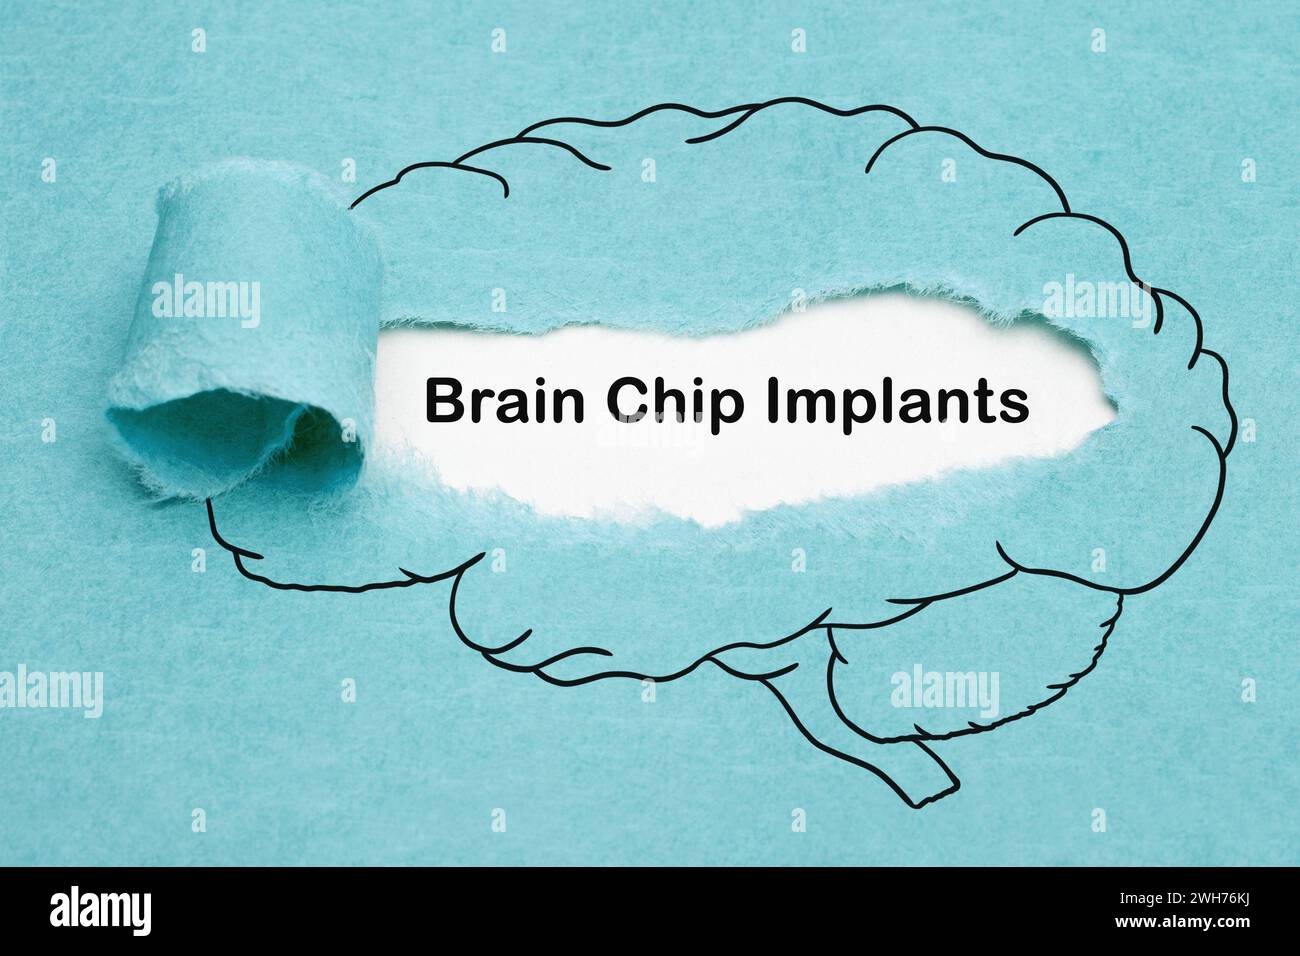 Texte Brain Chip implants apparaissant derrière du papier bleu déchiré avec un dessin de cerveau humain. Concept d'innovation en neurotechnologie. Banque D'Images